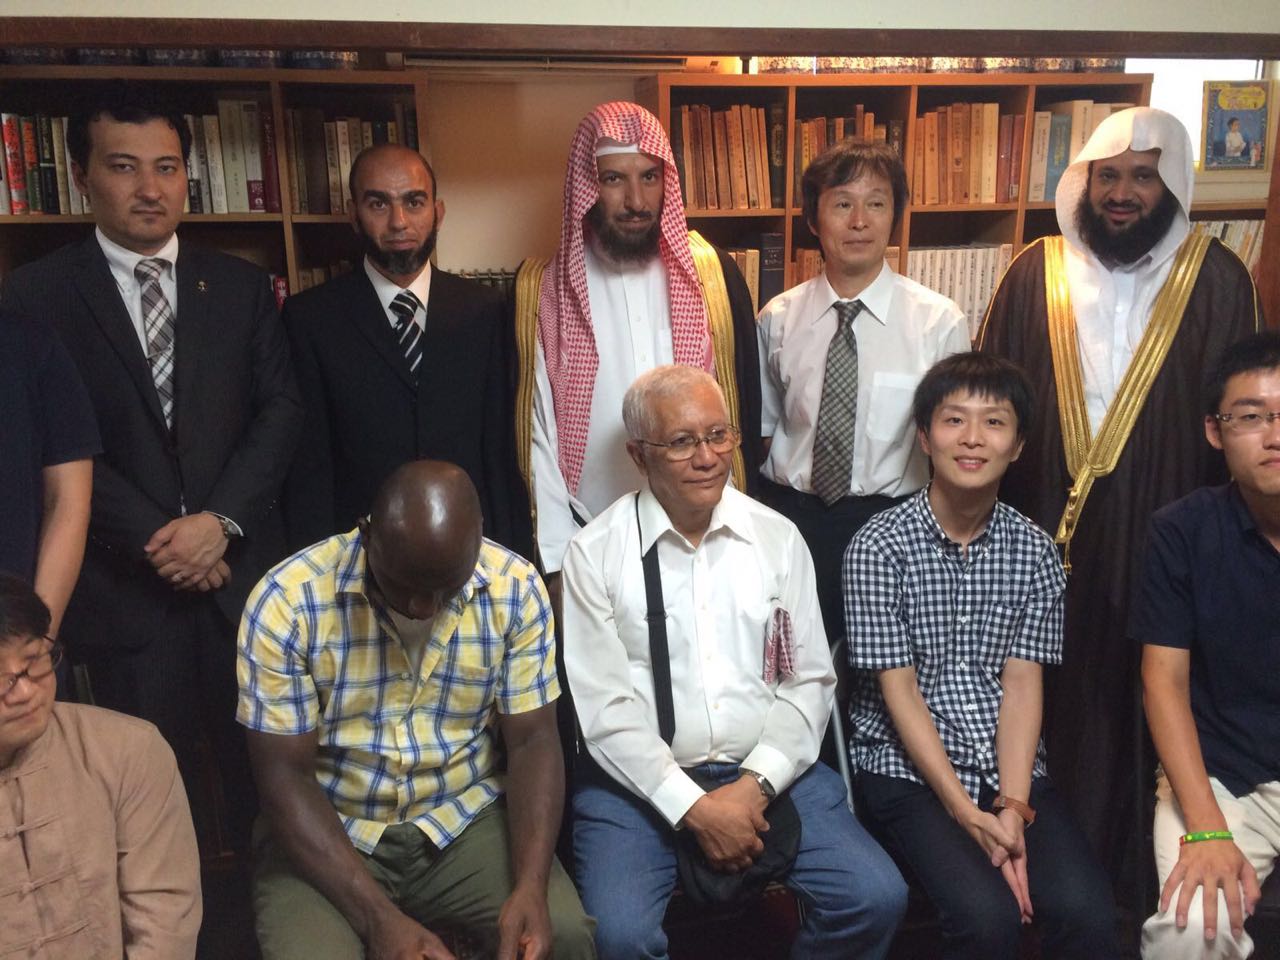 شاهد بالصور .. الشيخ الشثري يفتتح المكتبة العربية الإسلامية في اليابان